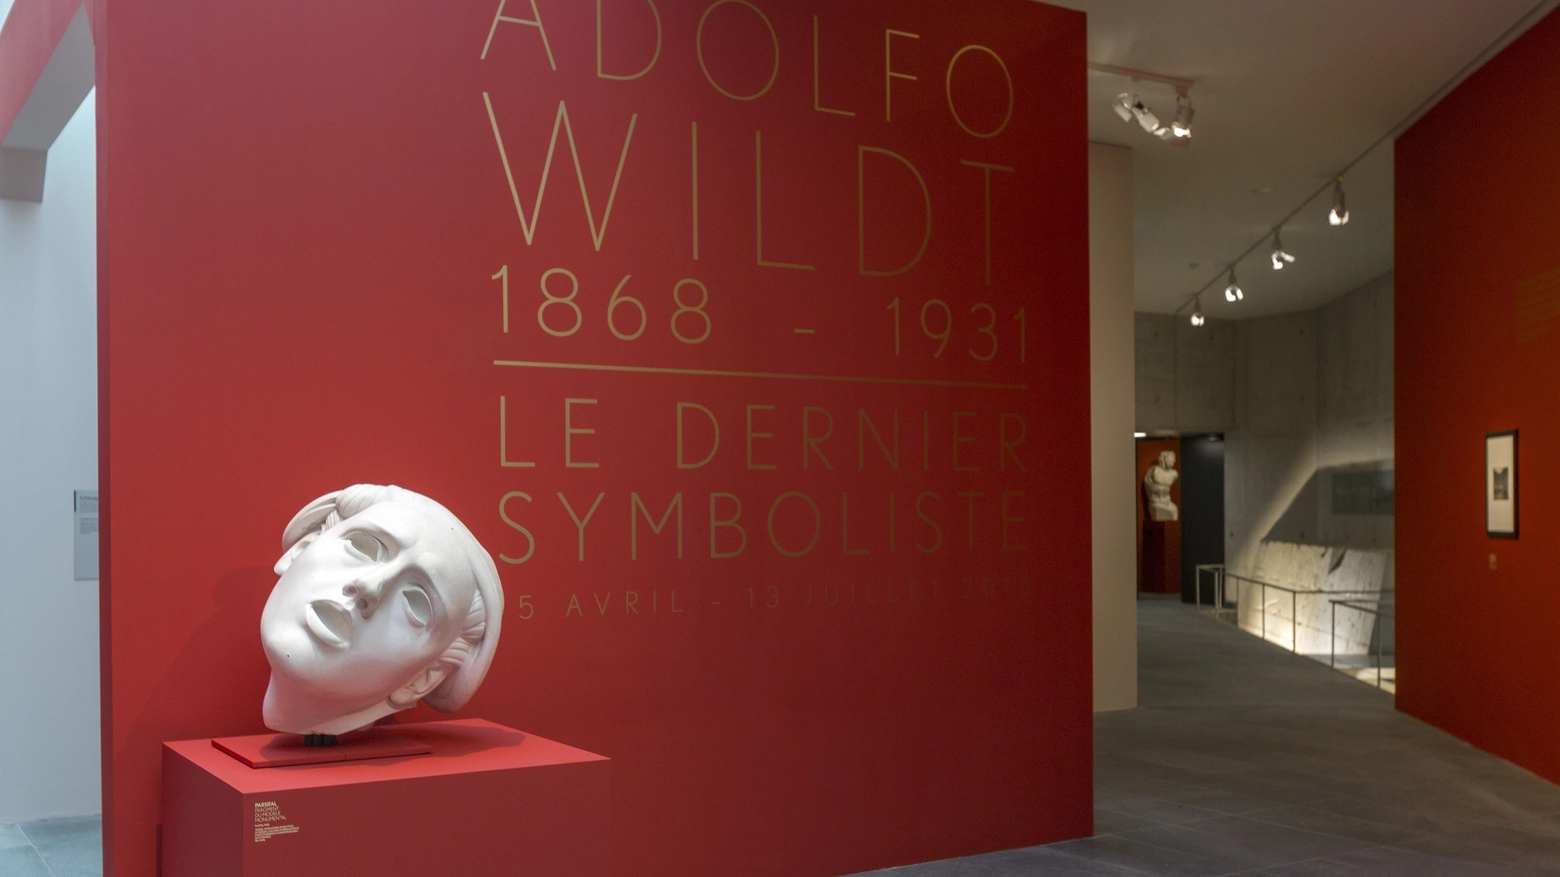 Una delle opere di Wildt in mostra ai musei dell'Orangerie di Parigi